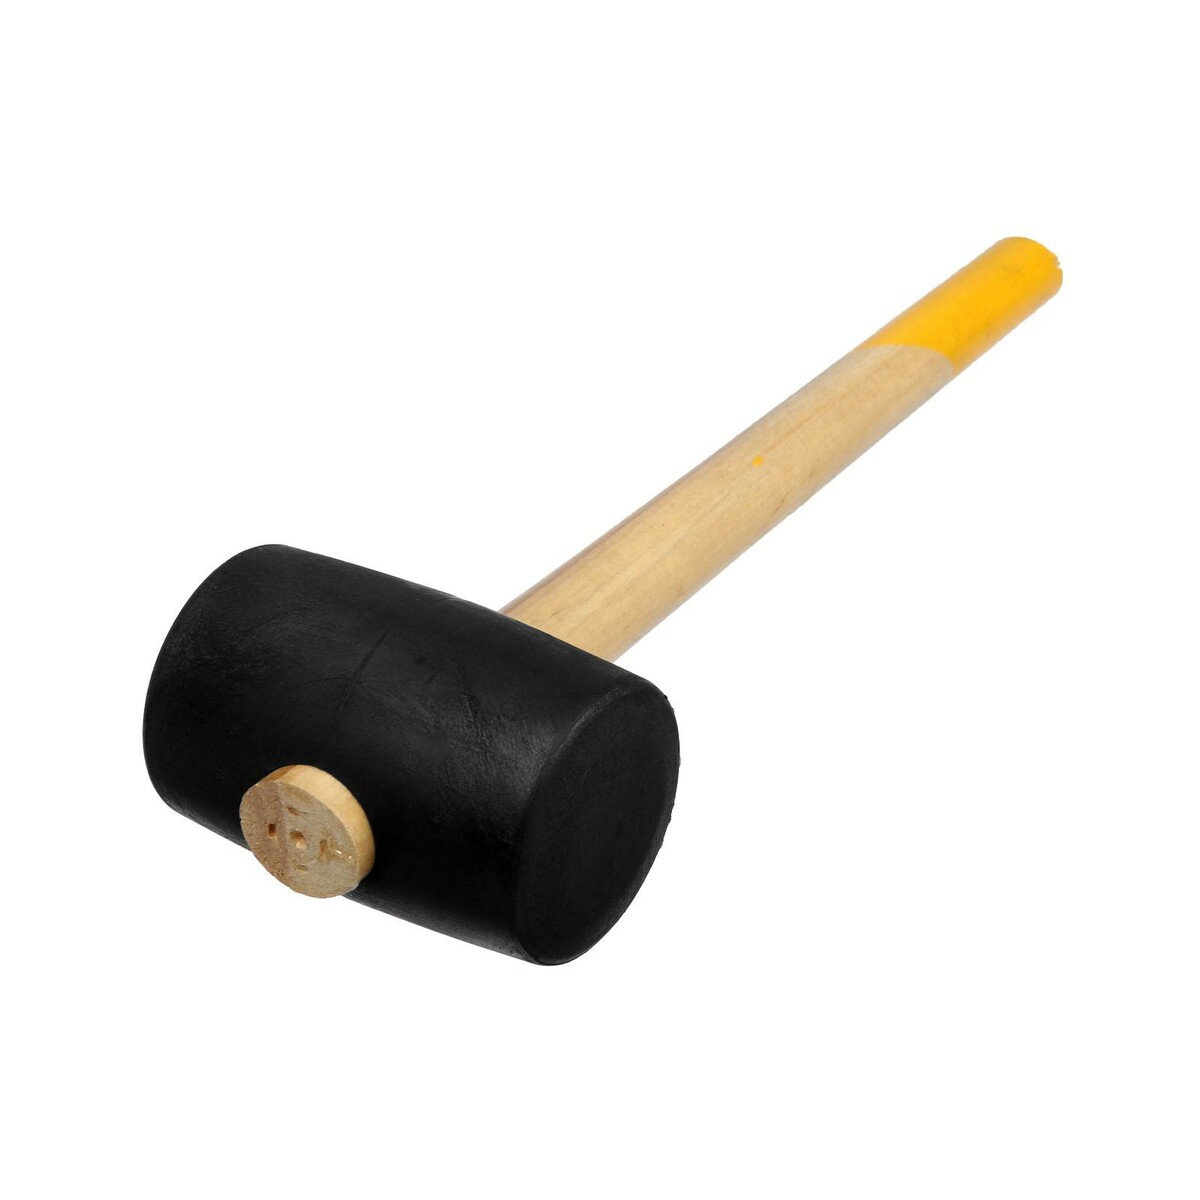 Киянка тундра, деревянная рукоятка, черная резина, 65 мм, 680 г киянка лом деревянная рукоятка черная резина 65 мм 500 г